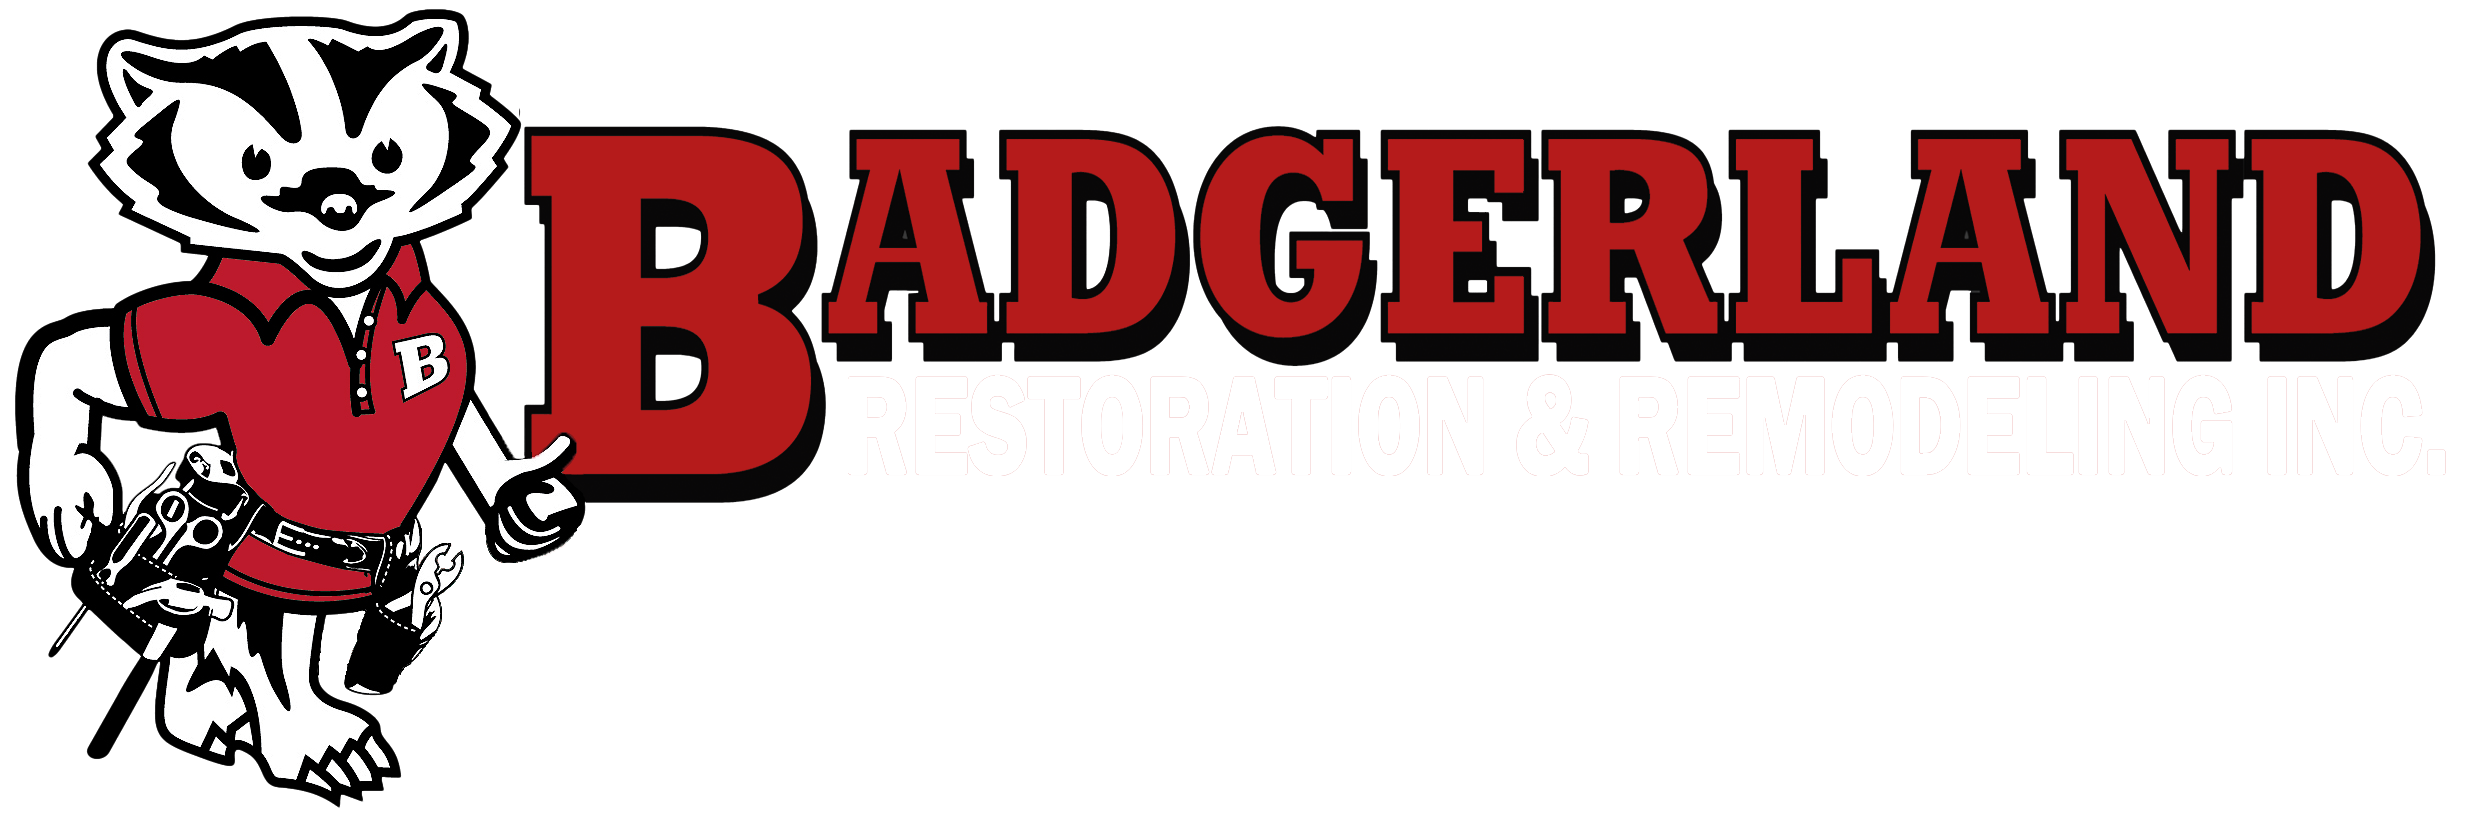 Badgerland Restoration and Remodeling's Logo